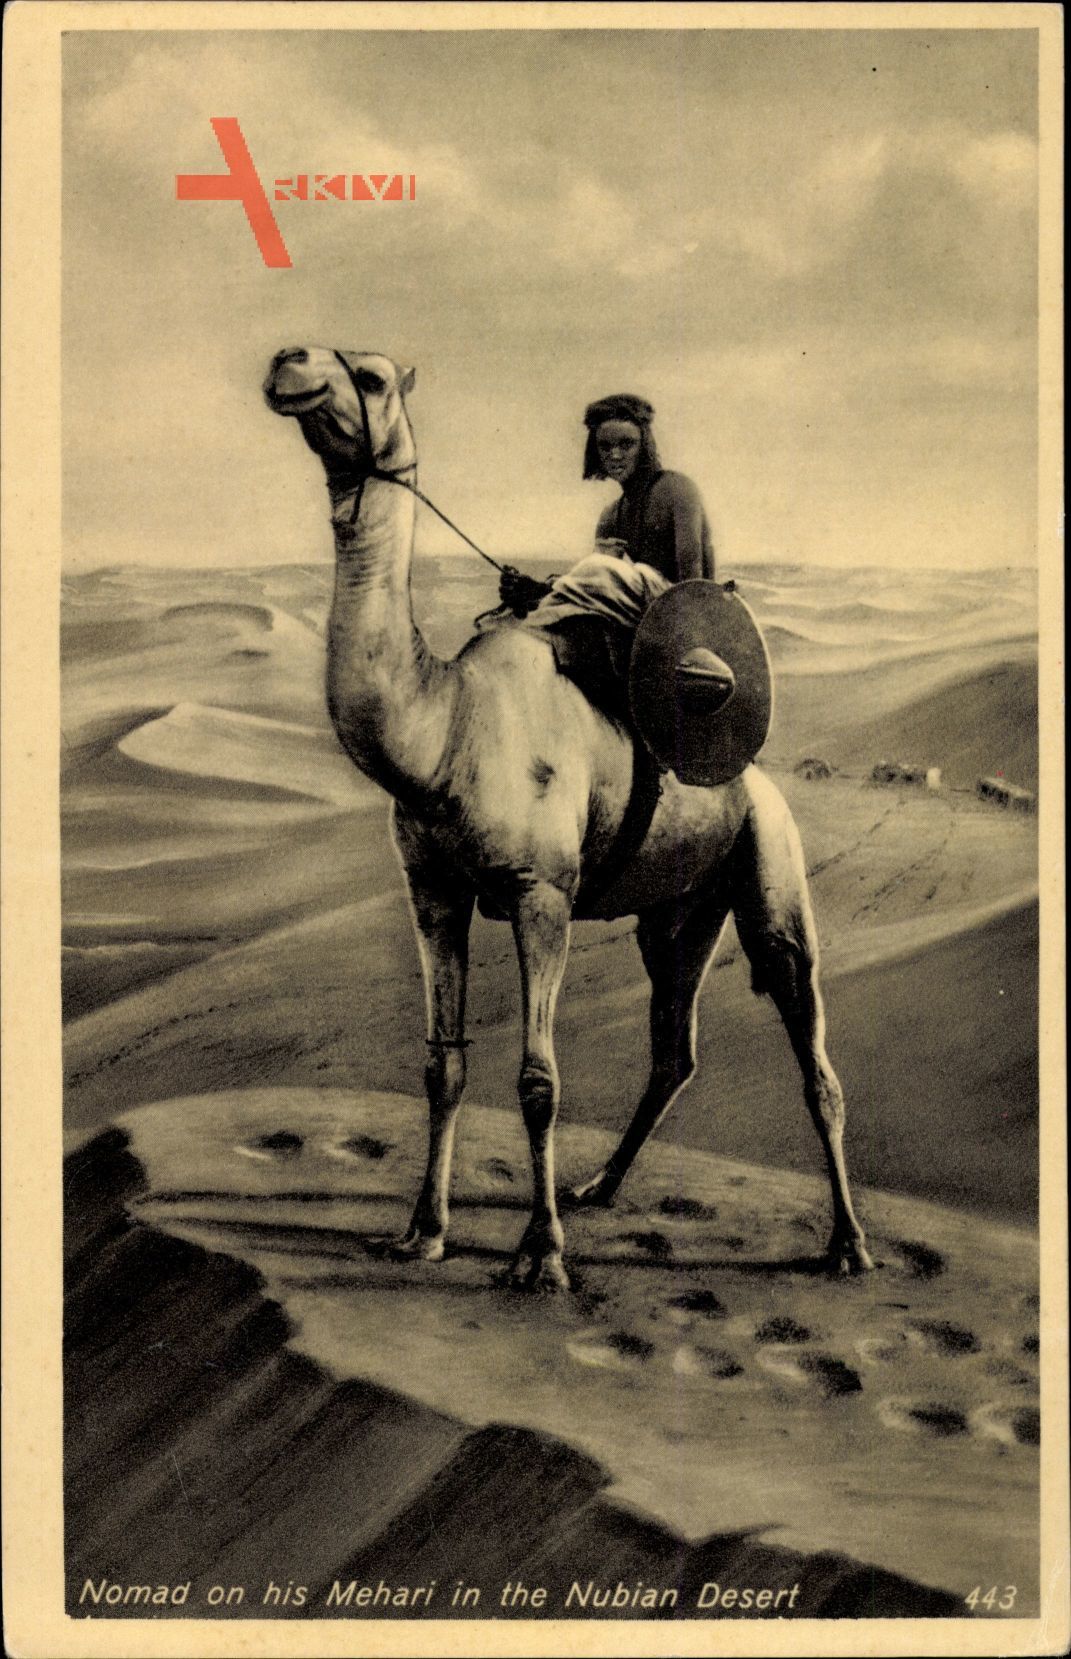 Ägypten, Nomad on his Mehari in the Nubian Desert